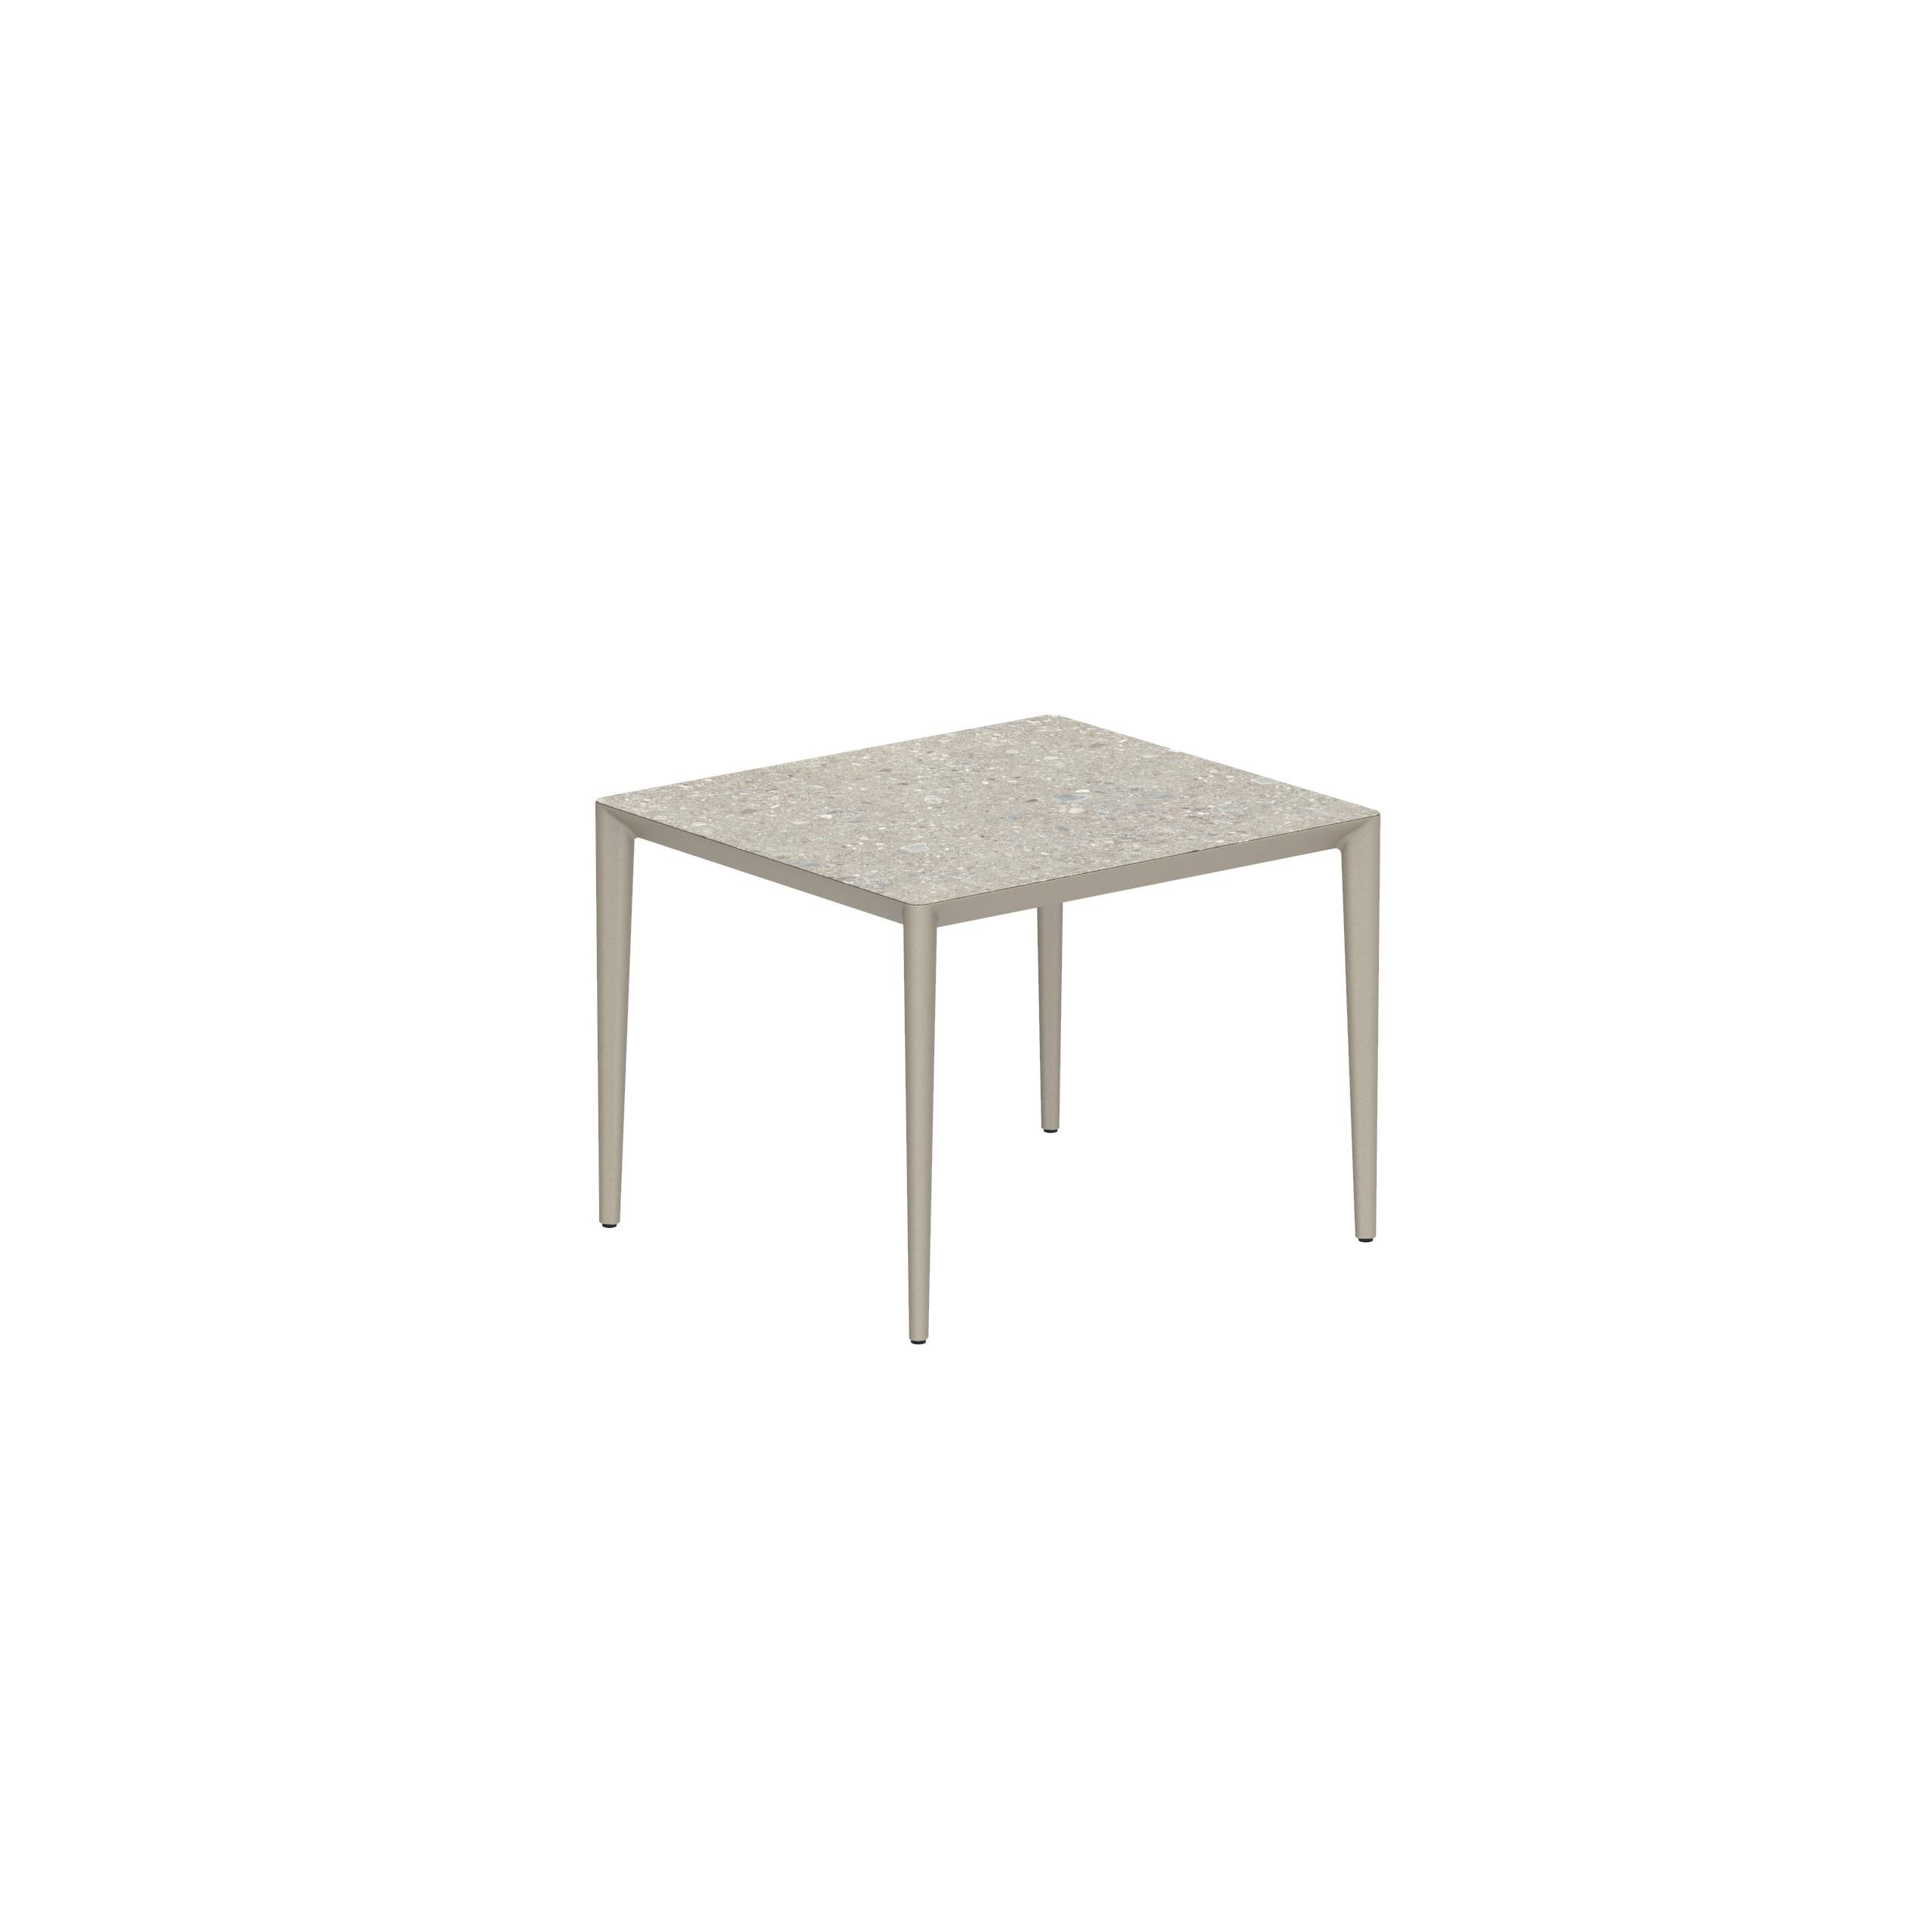 U-Nite Table 100x90cm Sand With Ceramic Tabletop In Ceppo Dolomitica